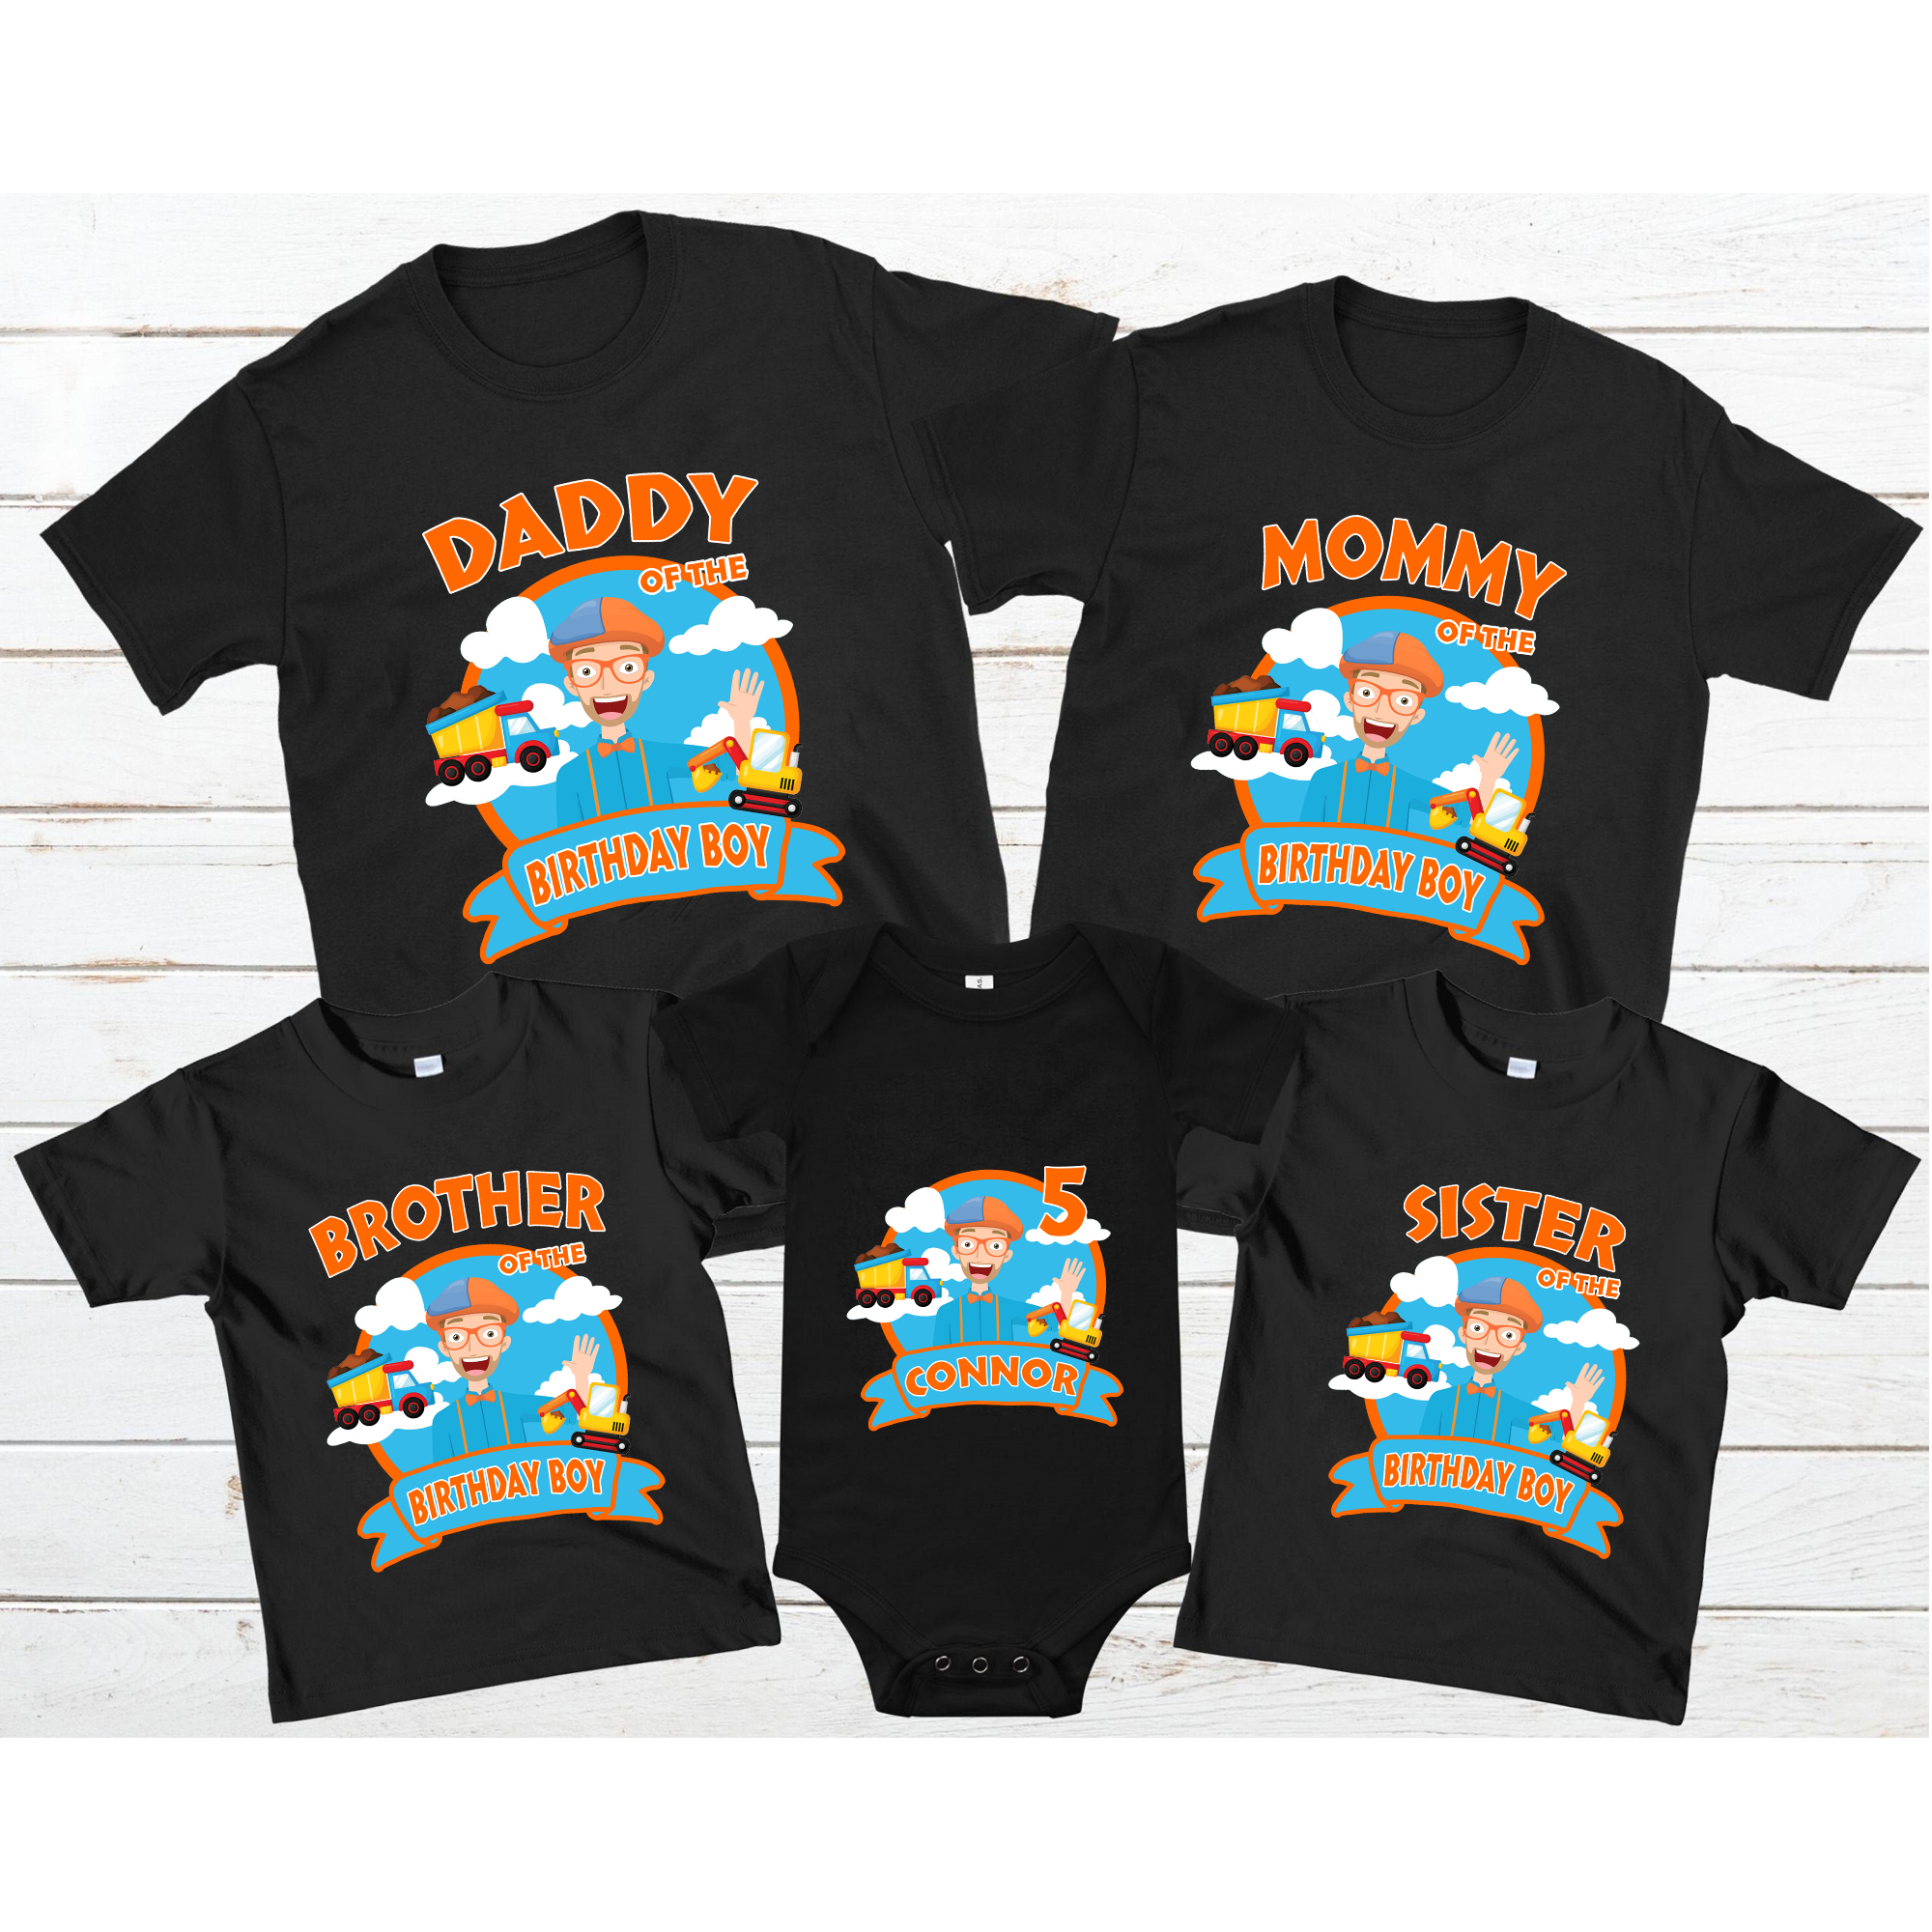 Personalized Blippi Birthday Shirts, Family Blippi shirts, Blippi birthday theme shirts, Blippi birthday, Blippi shirt, Matching Family Shirt